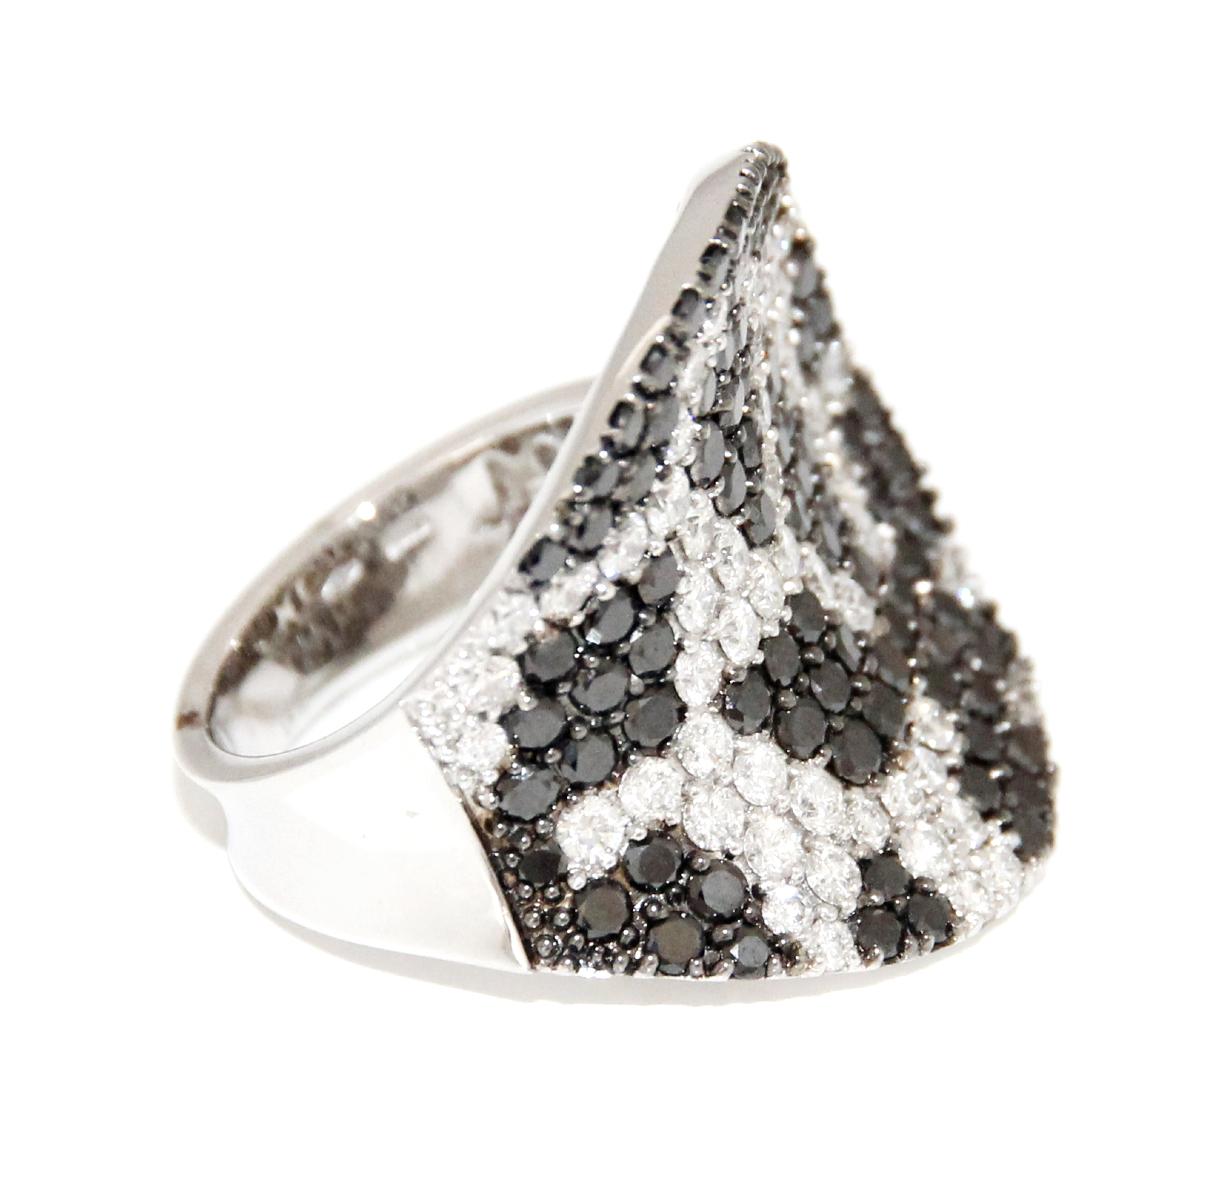 Stefan Hafner 18K White Gold Diamond Ring 
Diamonds 4.72CTW 
US Size 7  
Retail $24,950.00